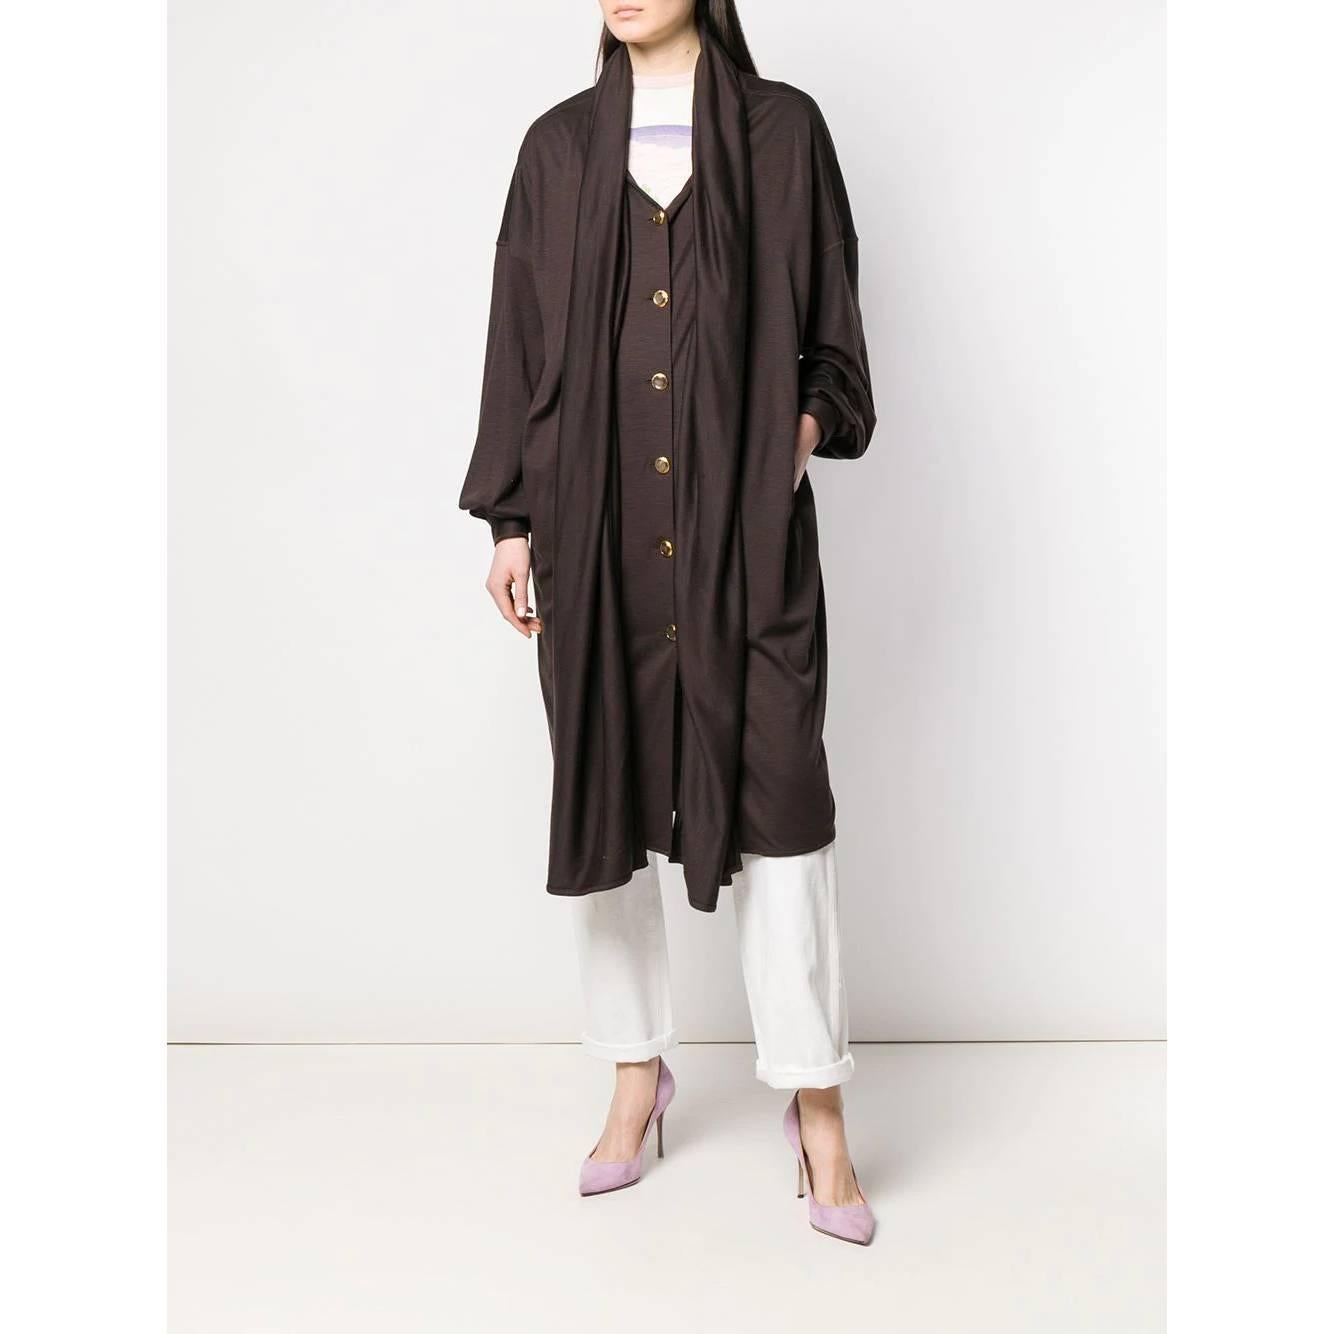 Women's or Men's 1980s Christian Dior Hooded Coat